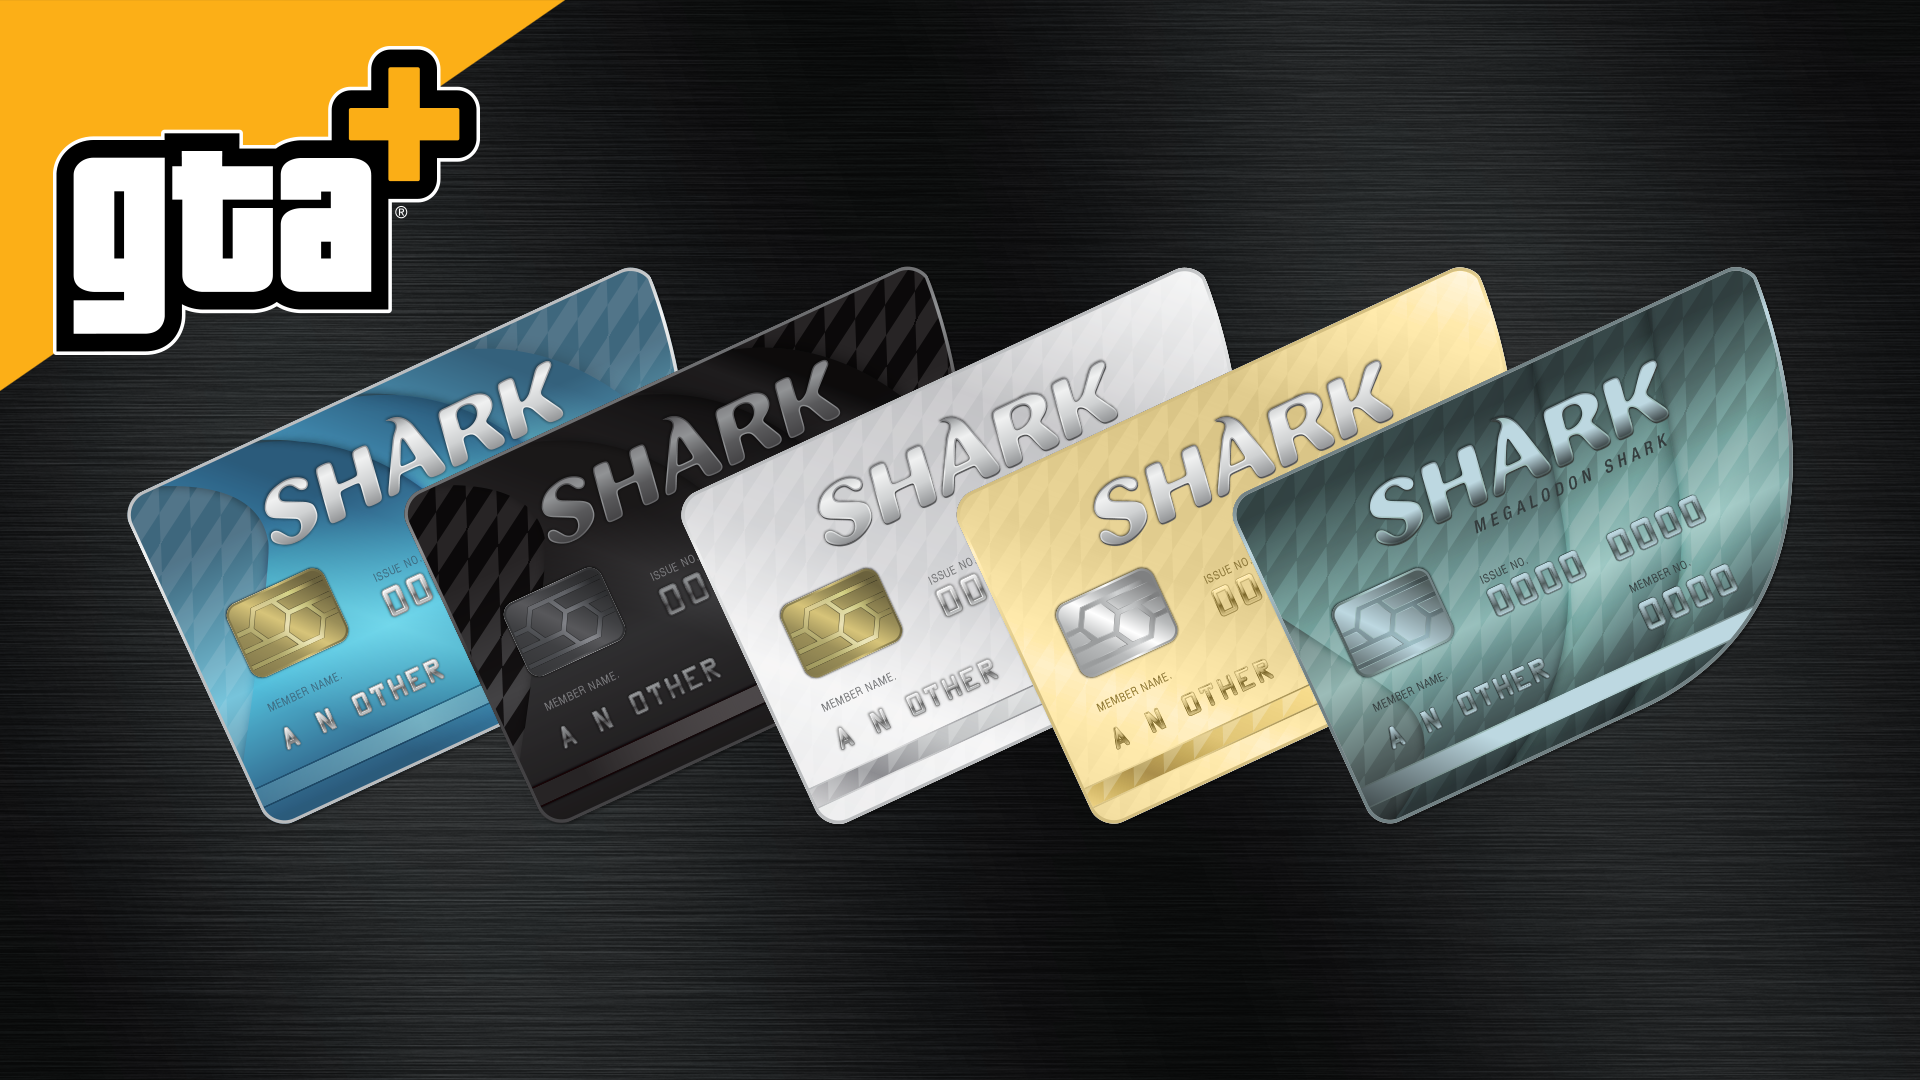 Approfitta delle speciali GTA+ Shark Card che regalano ancora più GTA$ ad ogni acquisto.